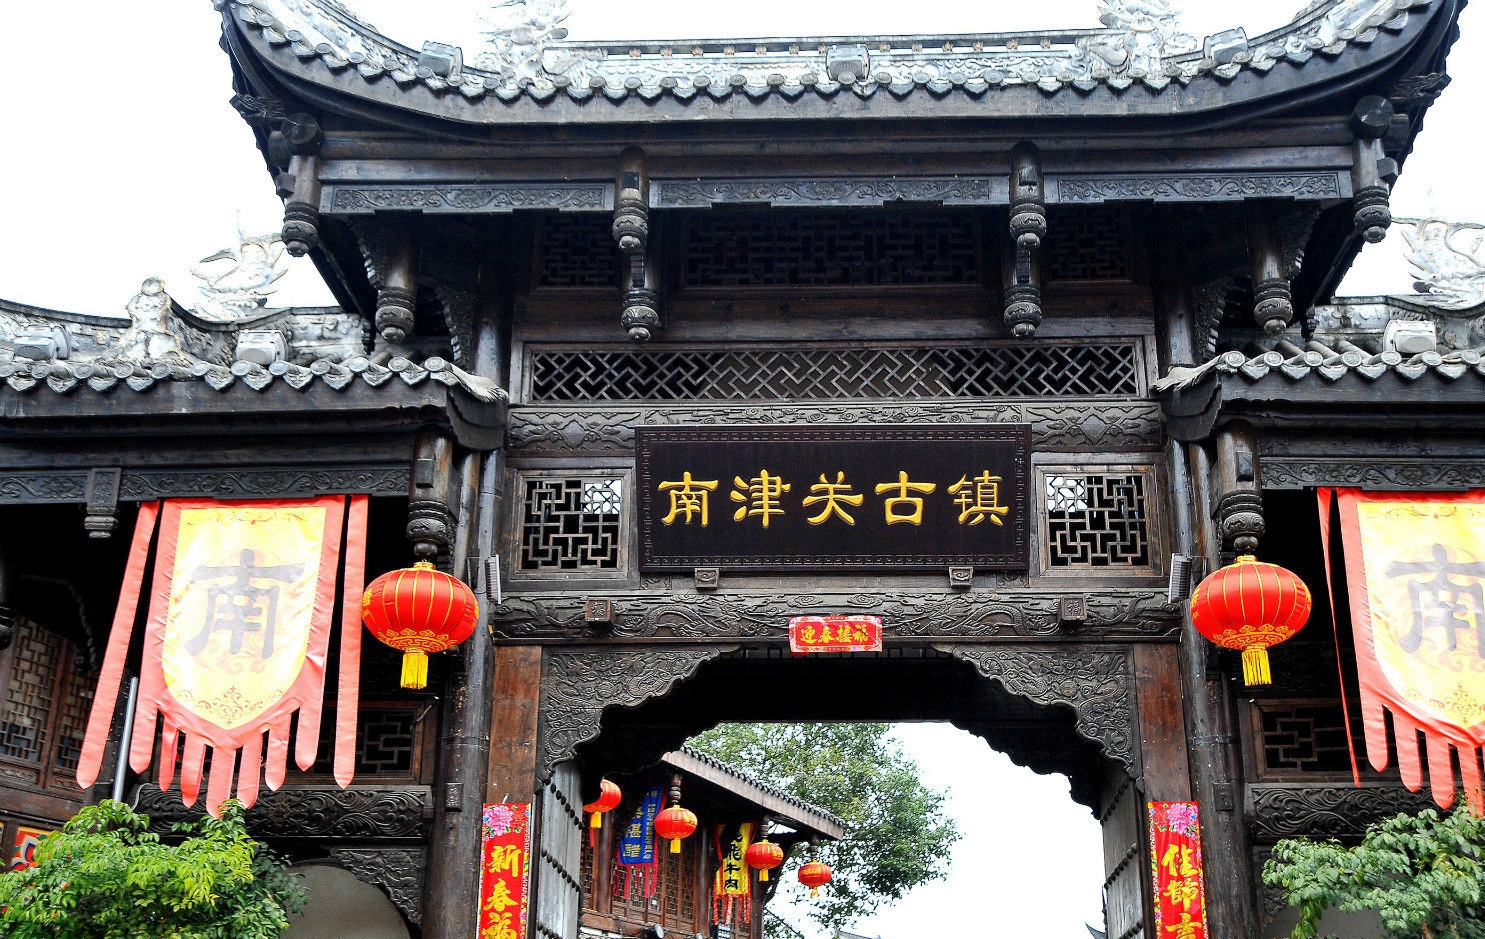 中國旅遊資訊 | 尊貴旅遊 Pride Tour